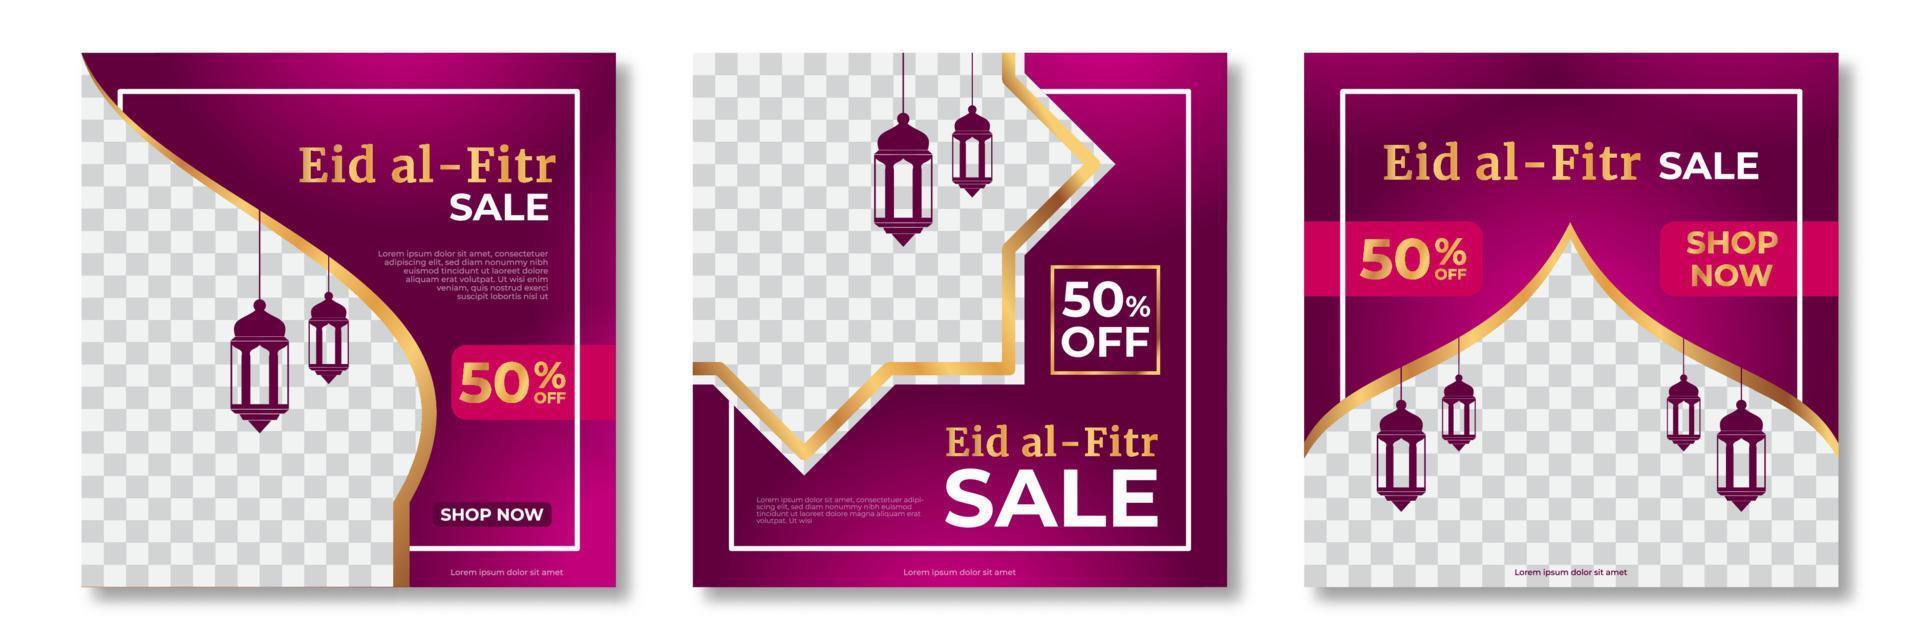 set di modello di banner di vendita eid al fitr. eid al fitr modello di banner di vendita con collage di foto. adatto per post sui social media e annunci su Internet. illustrazione vettoriale